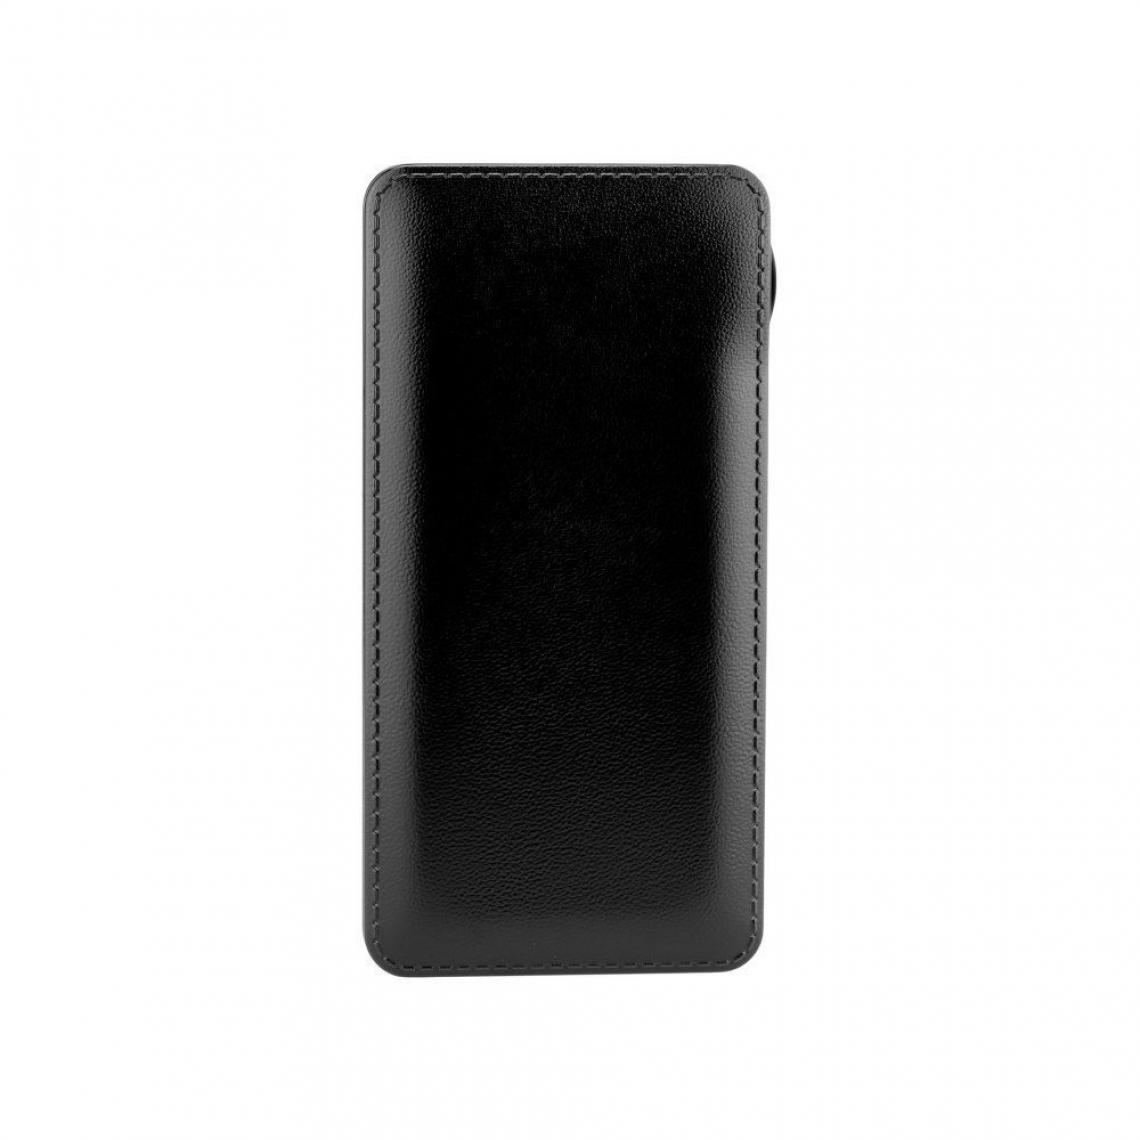 Ozzzo - Chargeur batterie externe 30000 mAh powerbank ozzzo noir pour Logicom M bot tab 101 Pack Gaming - Autres accessoires smartphone